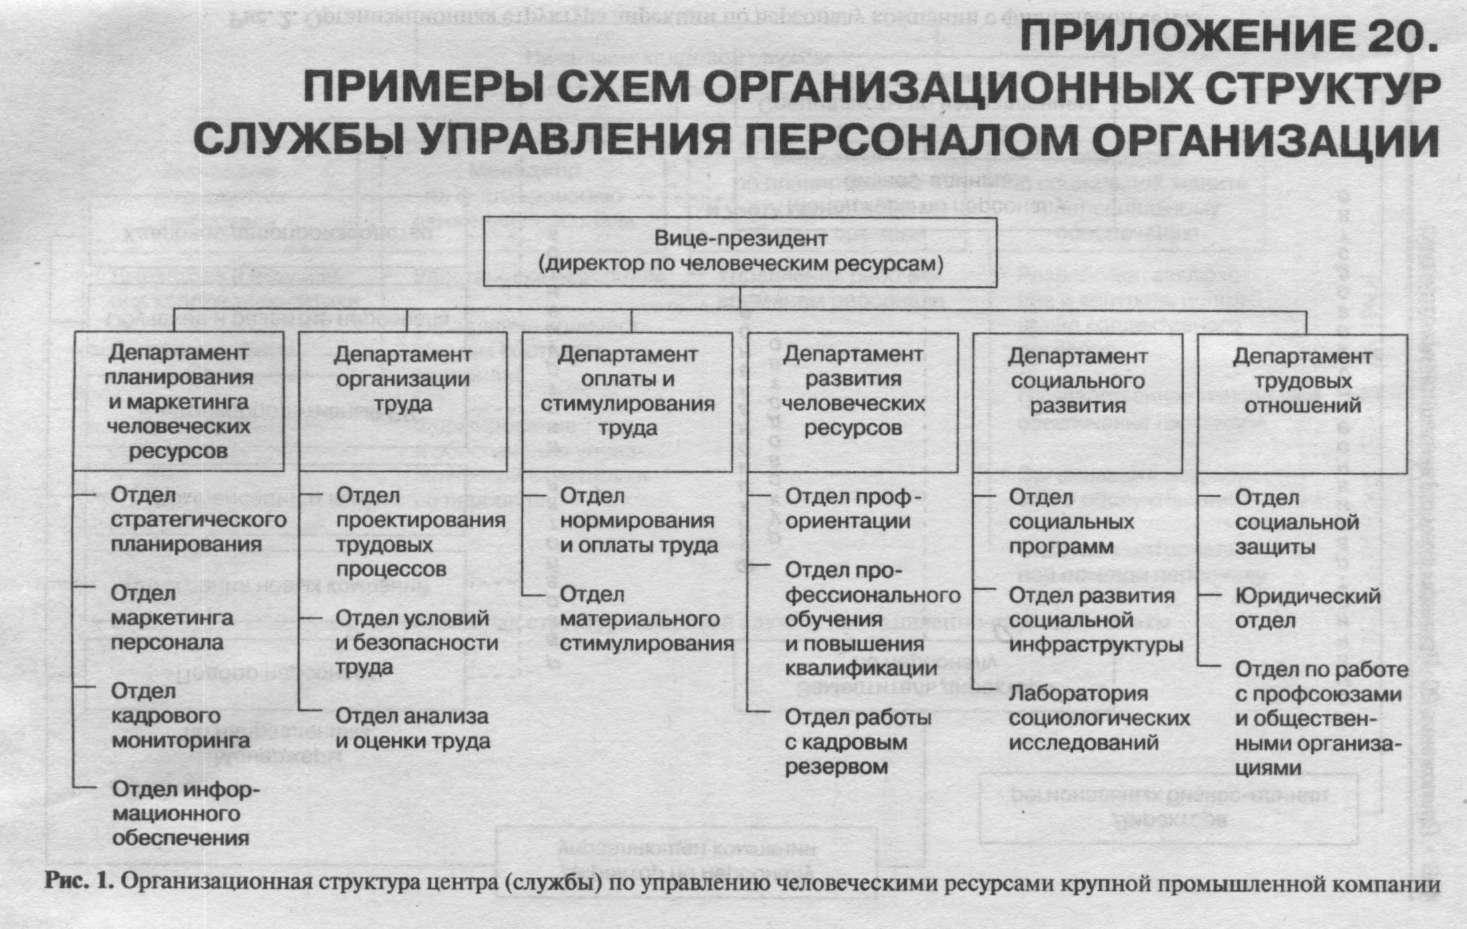 Функции отдел управления персоналом: Функции по управлению персоналом — e-xecutive.ru